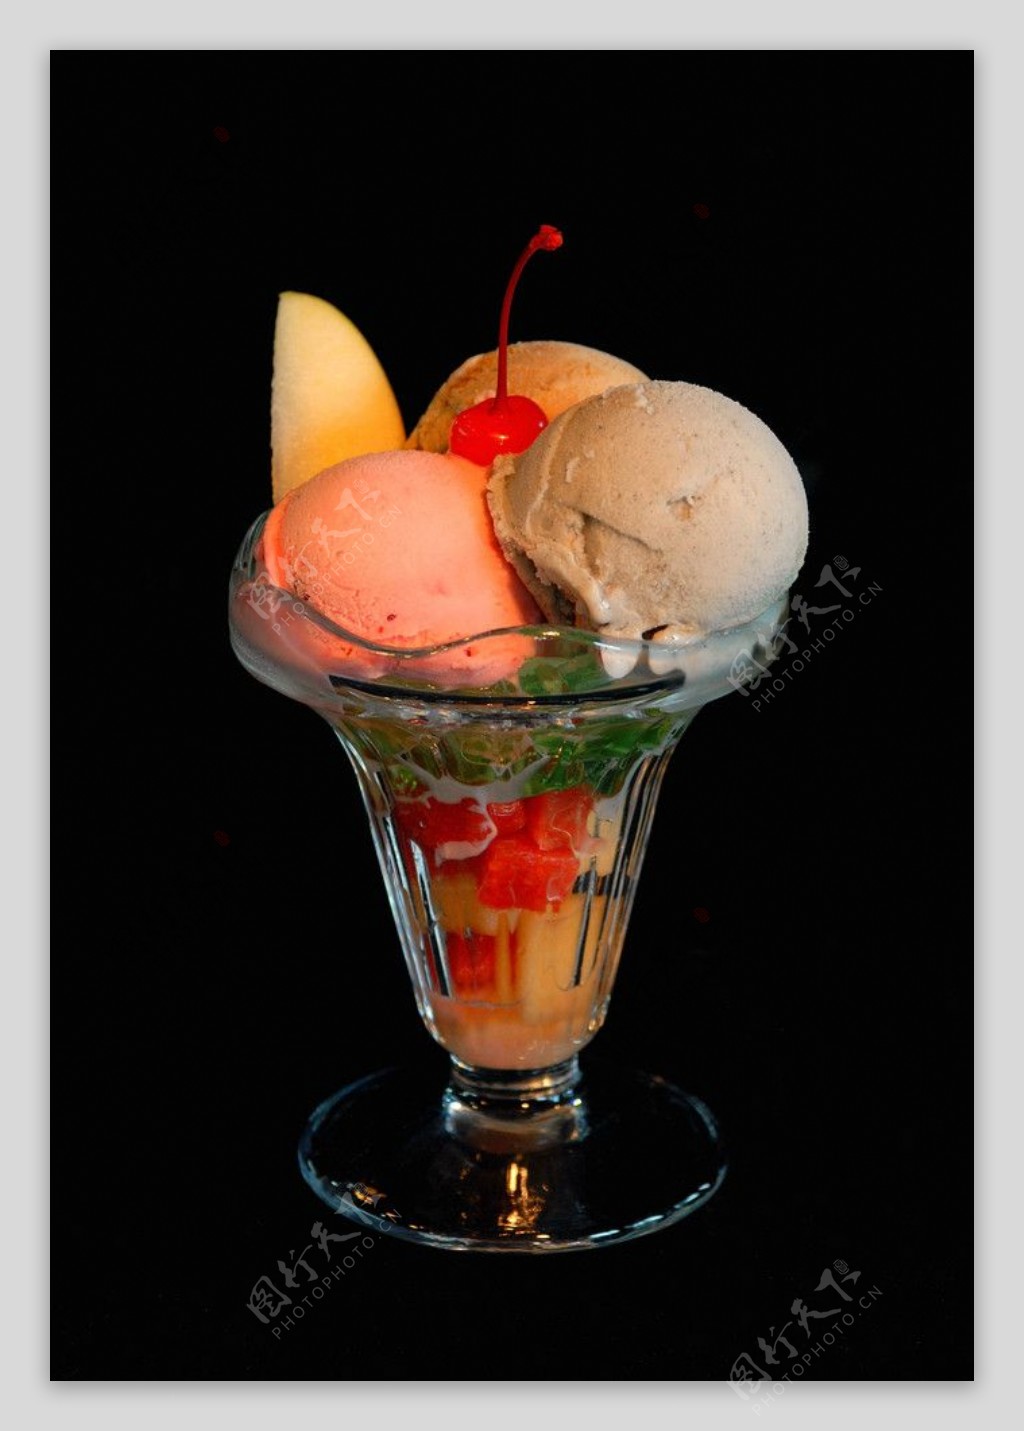 综合水果圣代雪糕冰淇淋奶酪冷饮图片